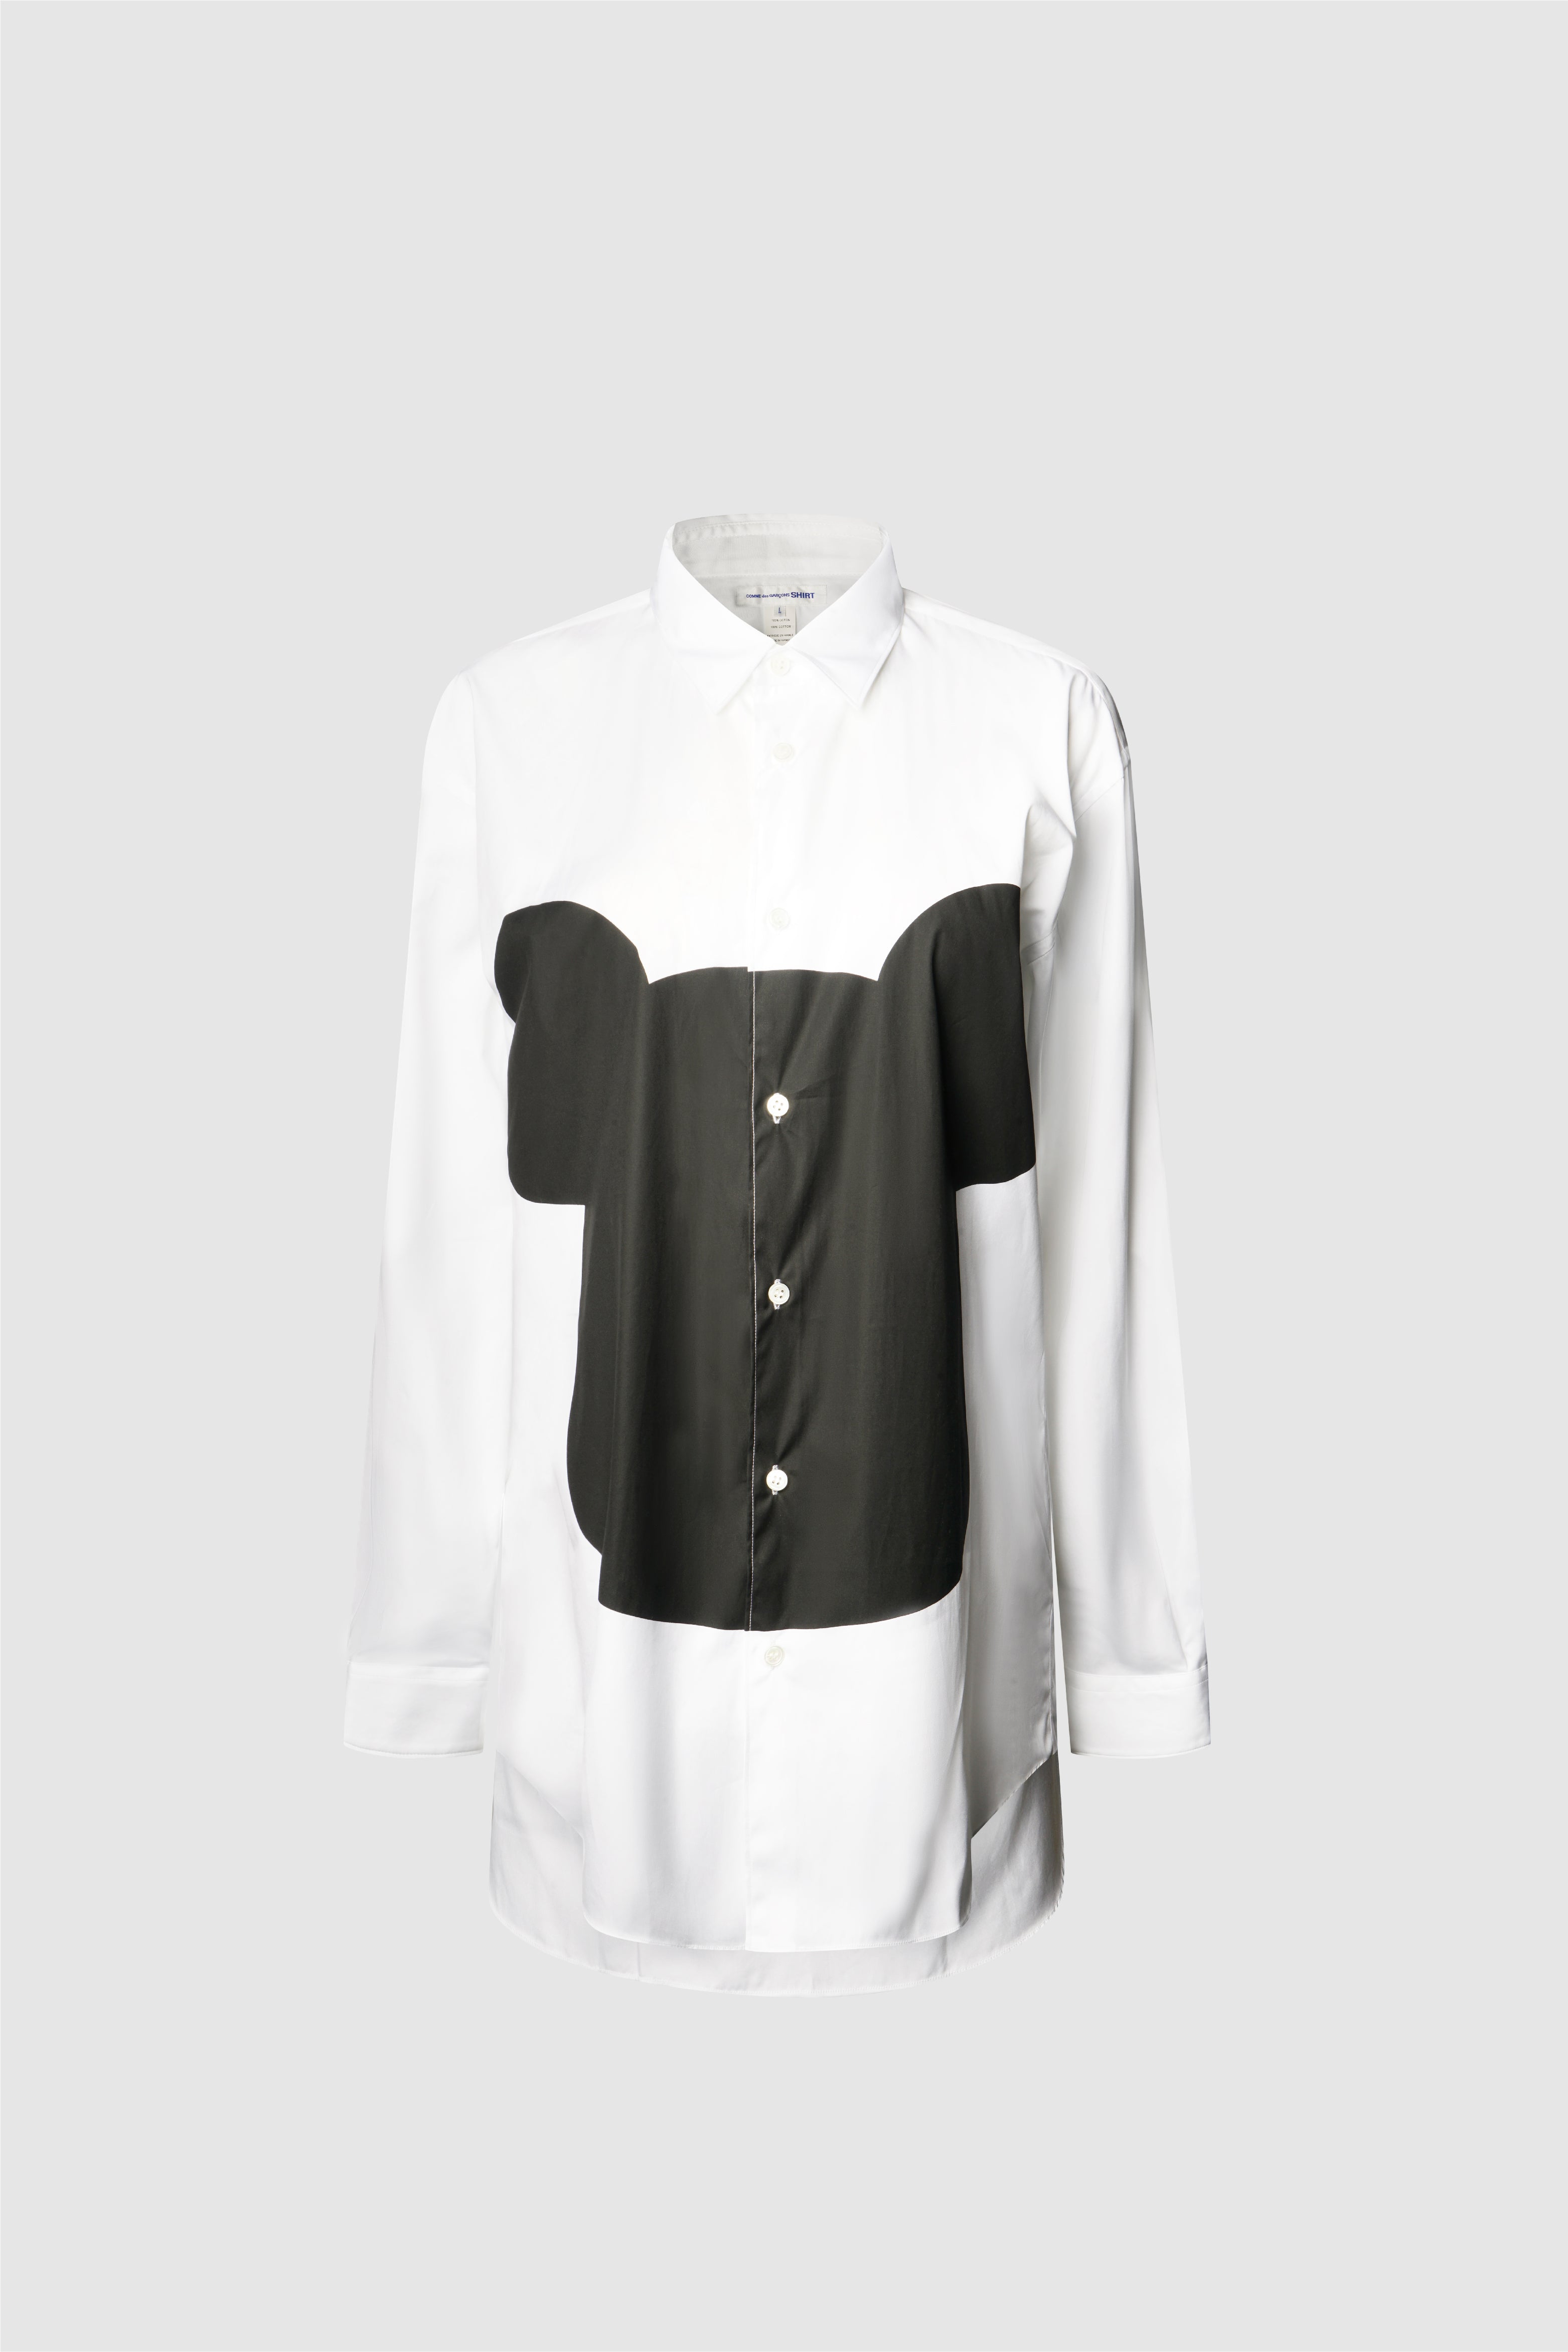 Selectshop FRAME - COMME DES GARÇONS SHIRT Shirt Shirts Concept Store Dubai